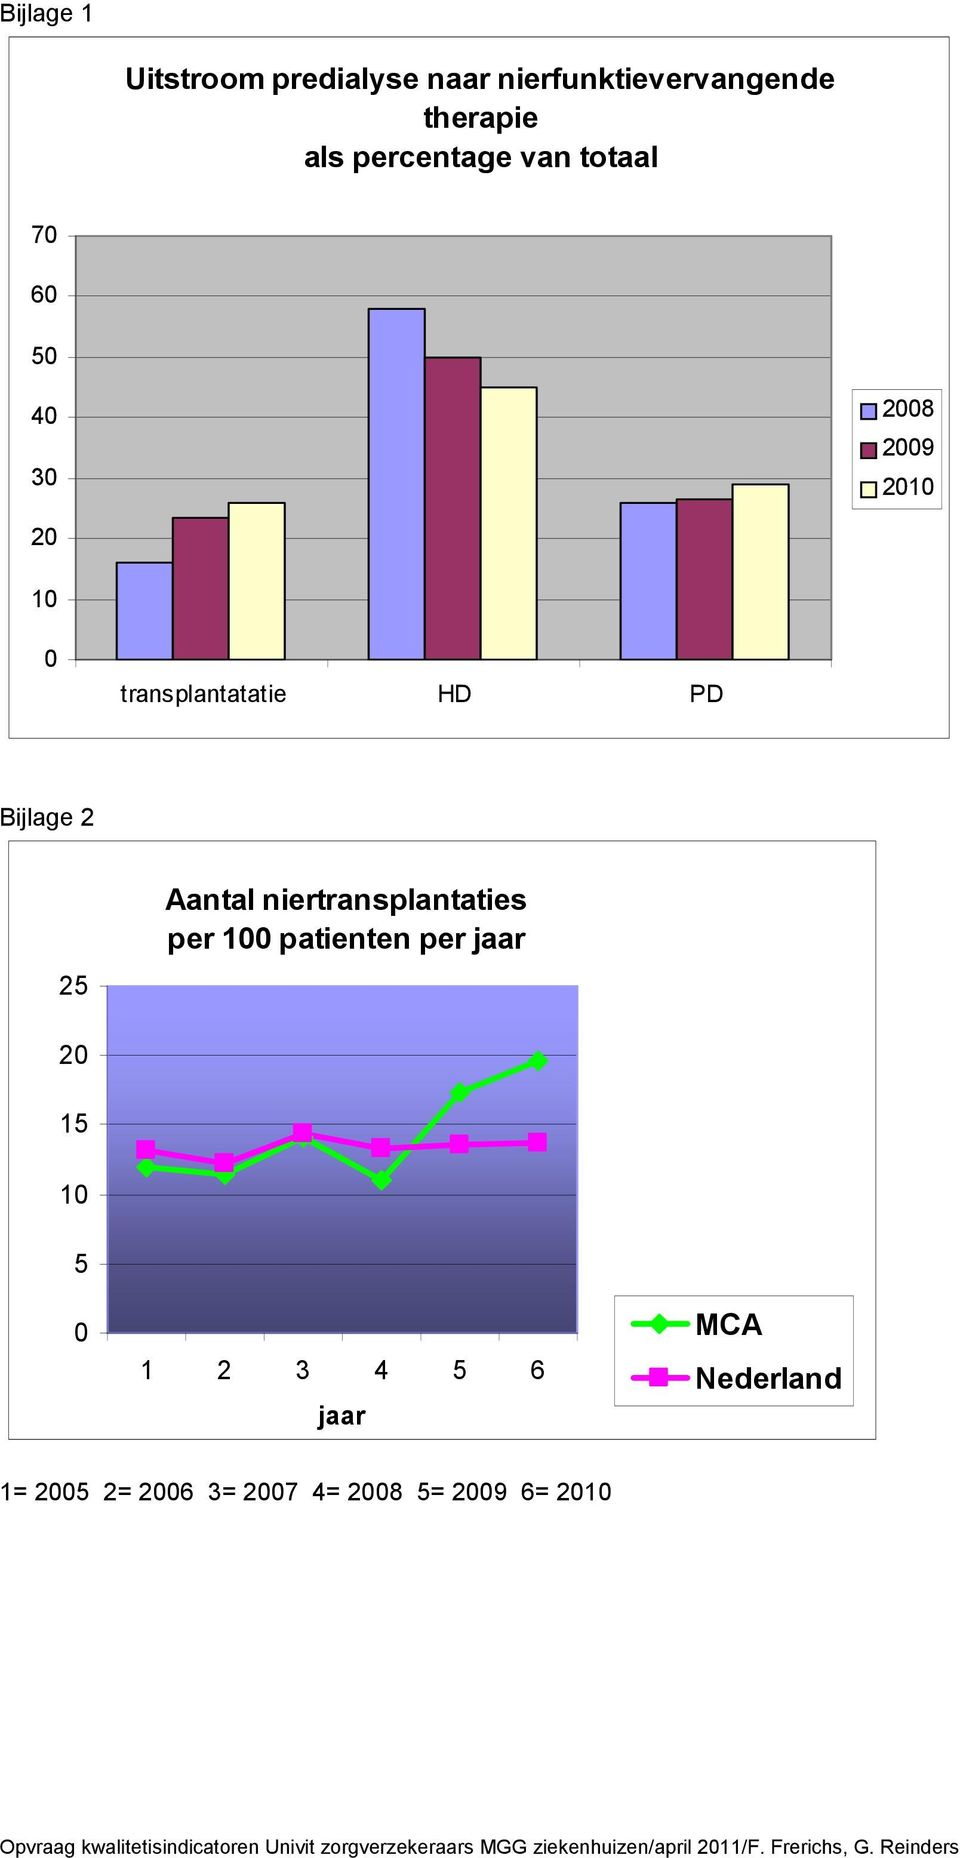 patienten per jaar 2 15 1 5 1 2 3 4 5 6 jaar MCA Nederland 1= 25 2= 26 3= 27 4= 28 5= 29 6= 21